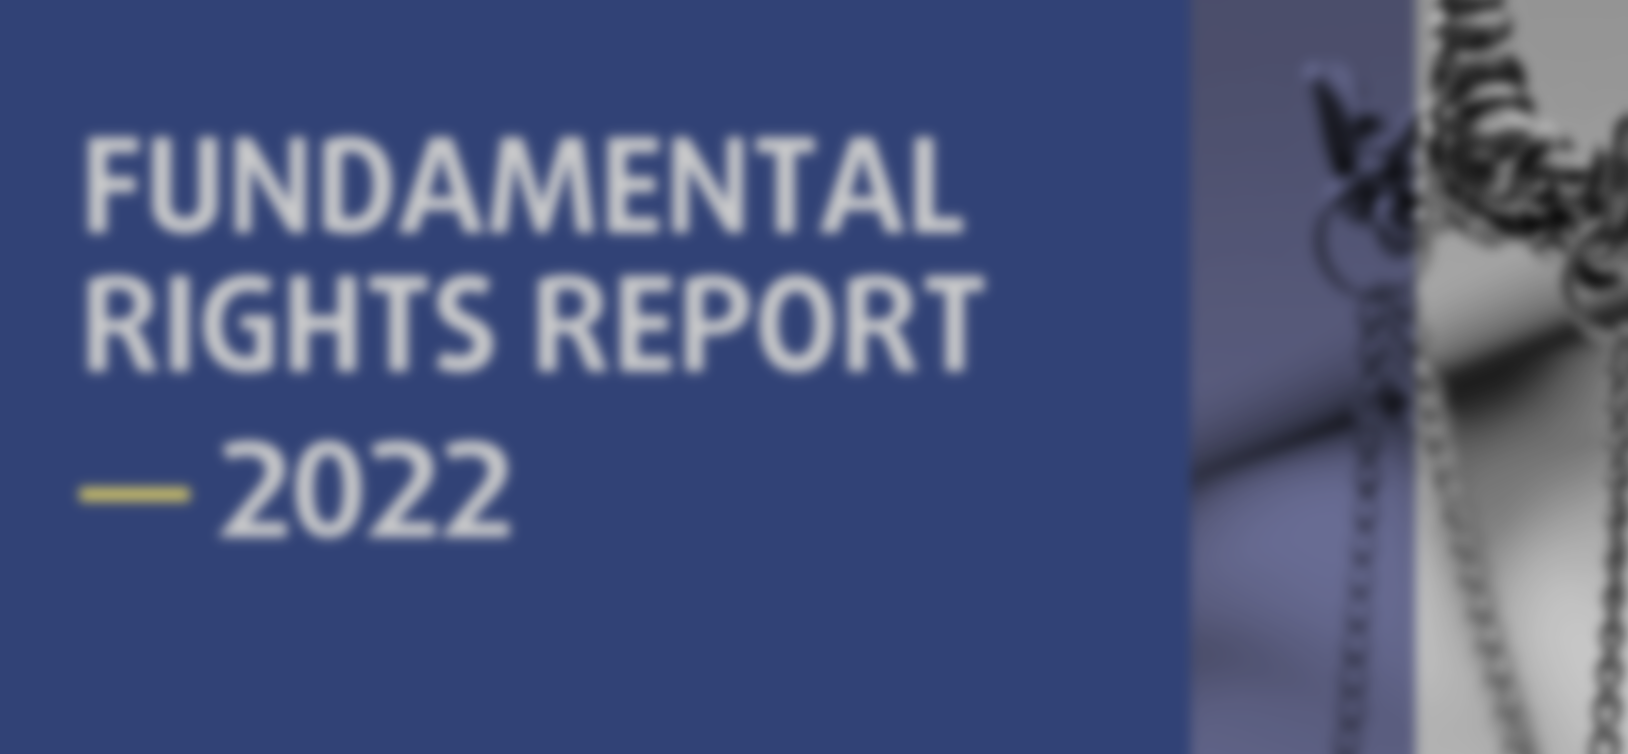 Contributo do OPJ para o Relatório dos Direitos Fundamentais 2022 da FRA